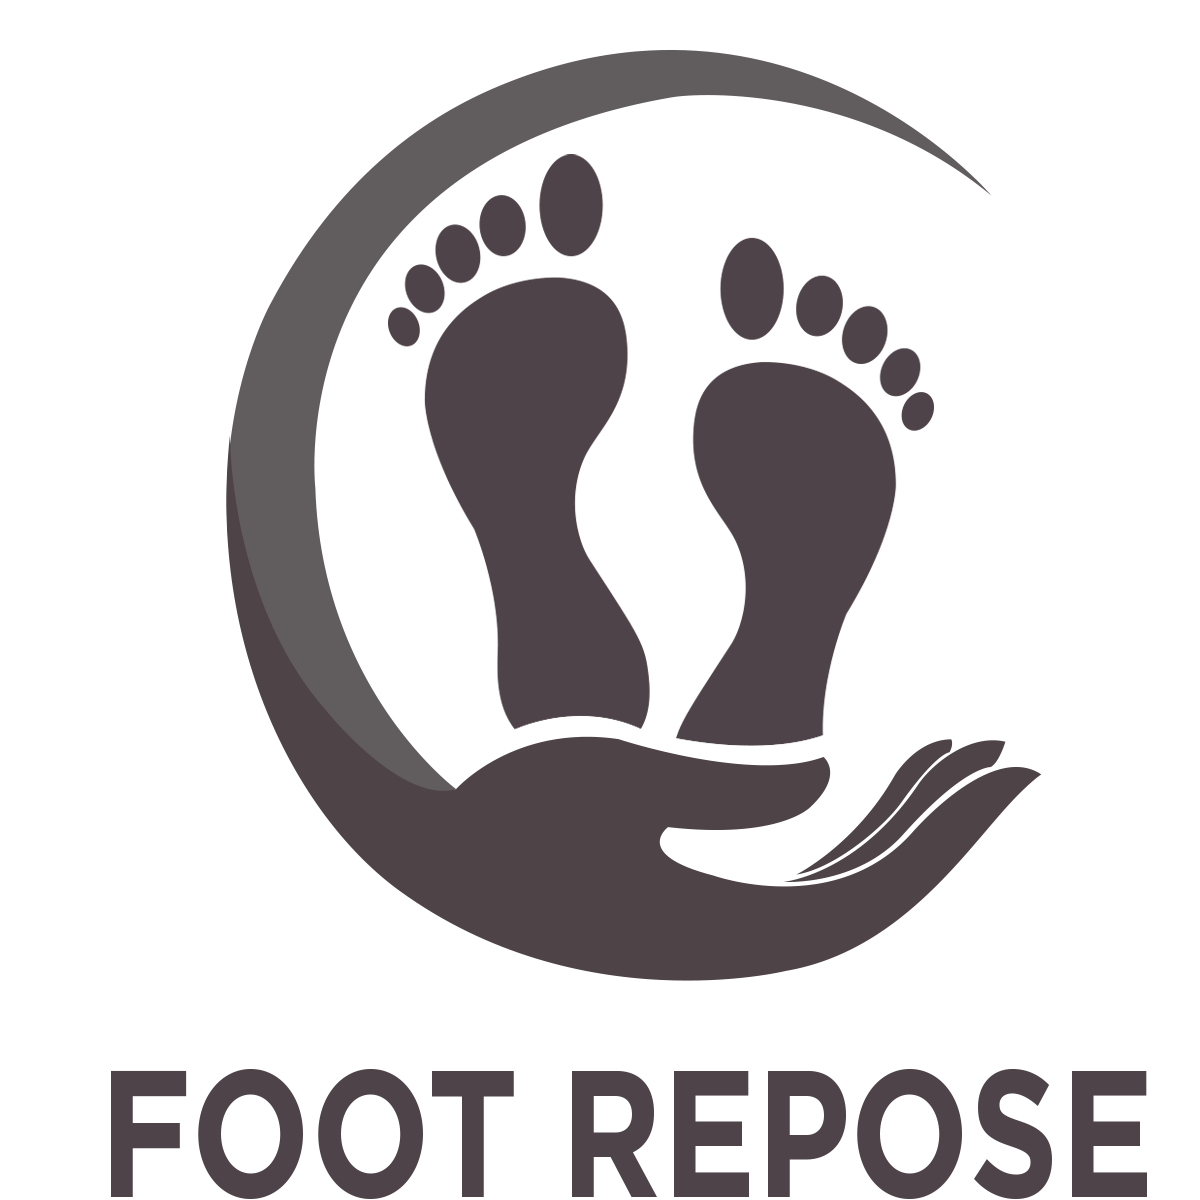 Foot Repose Man